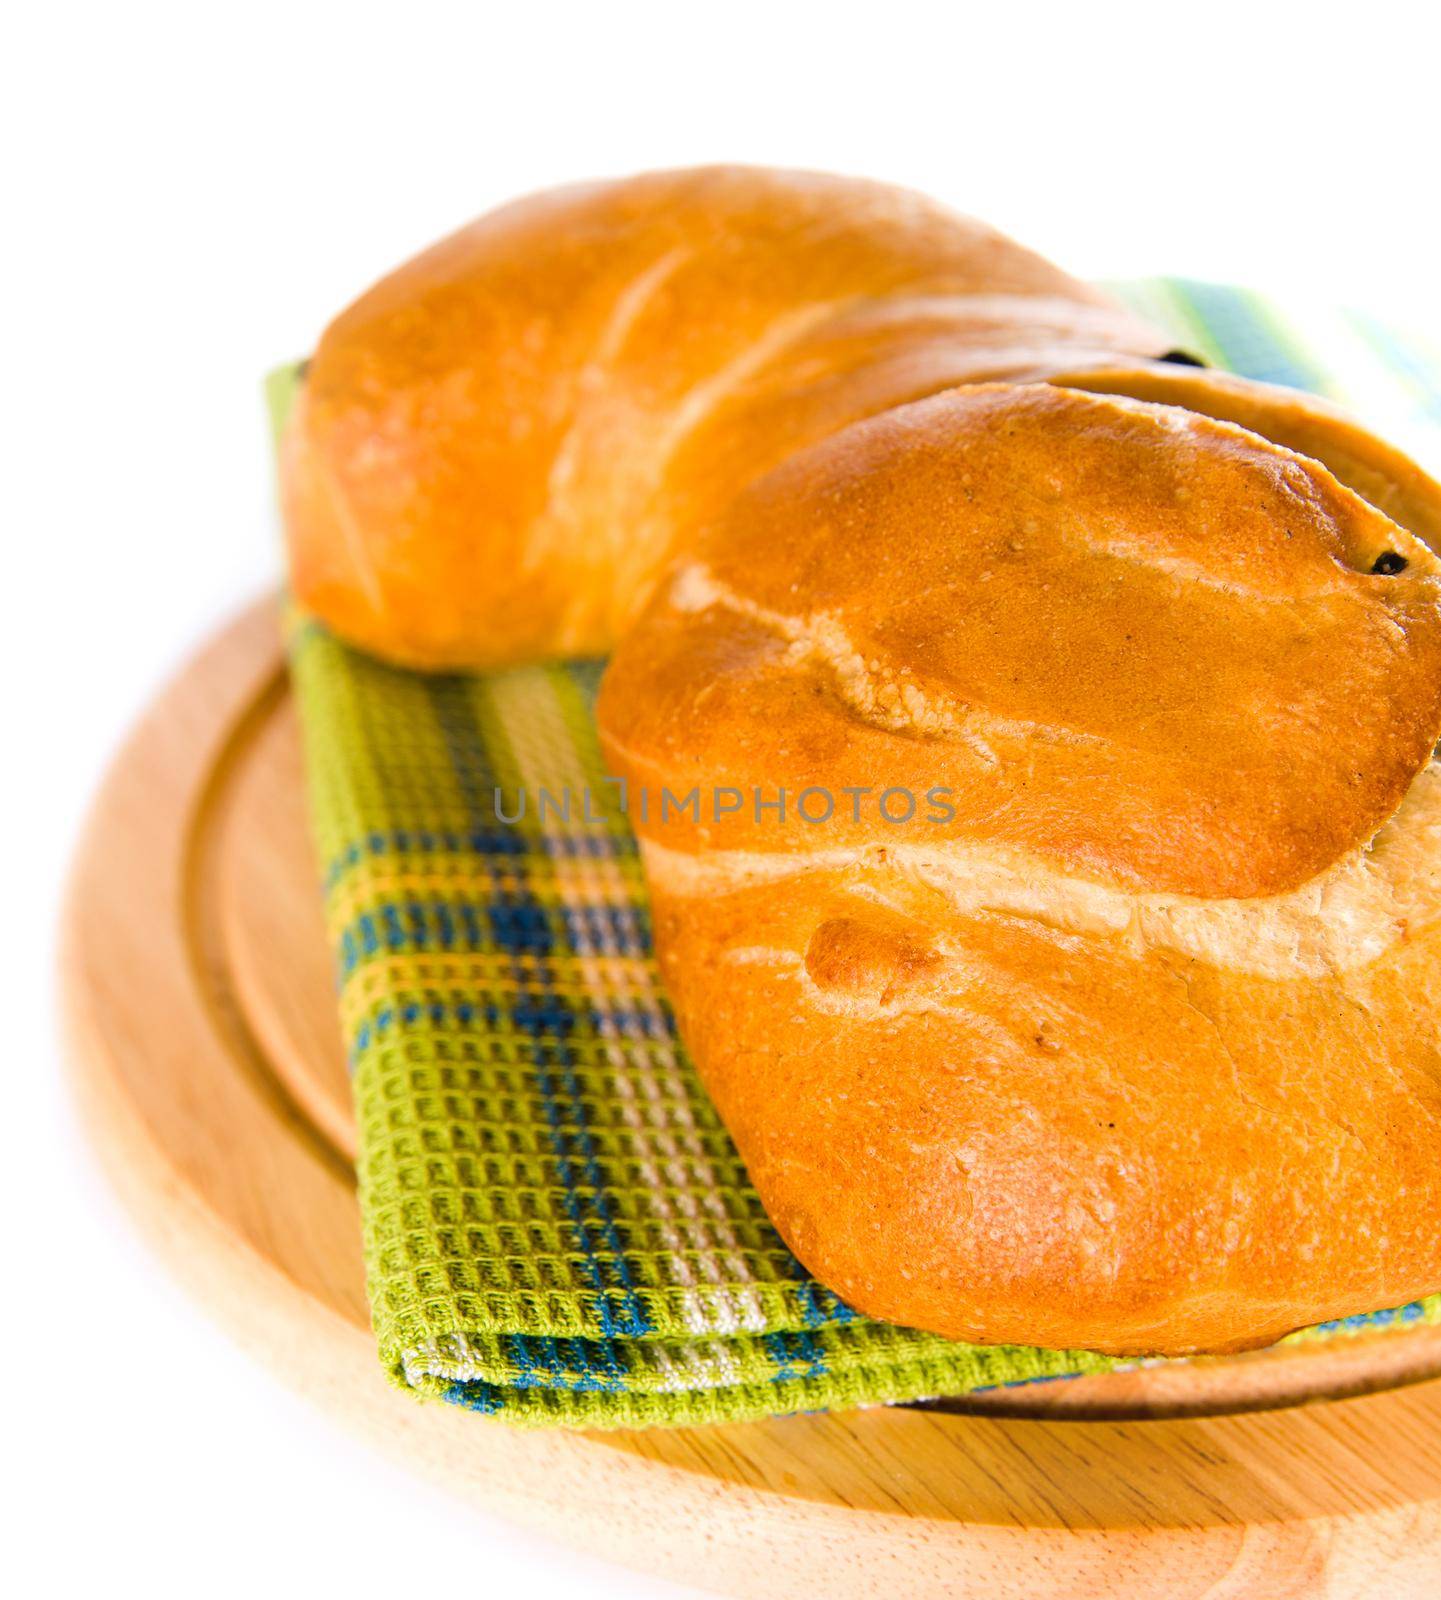 newly baked bread by tan4ikk1